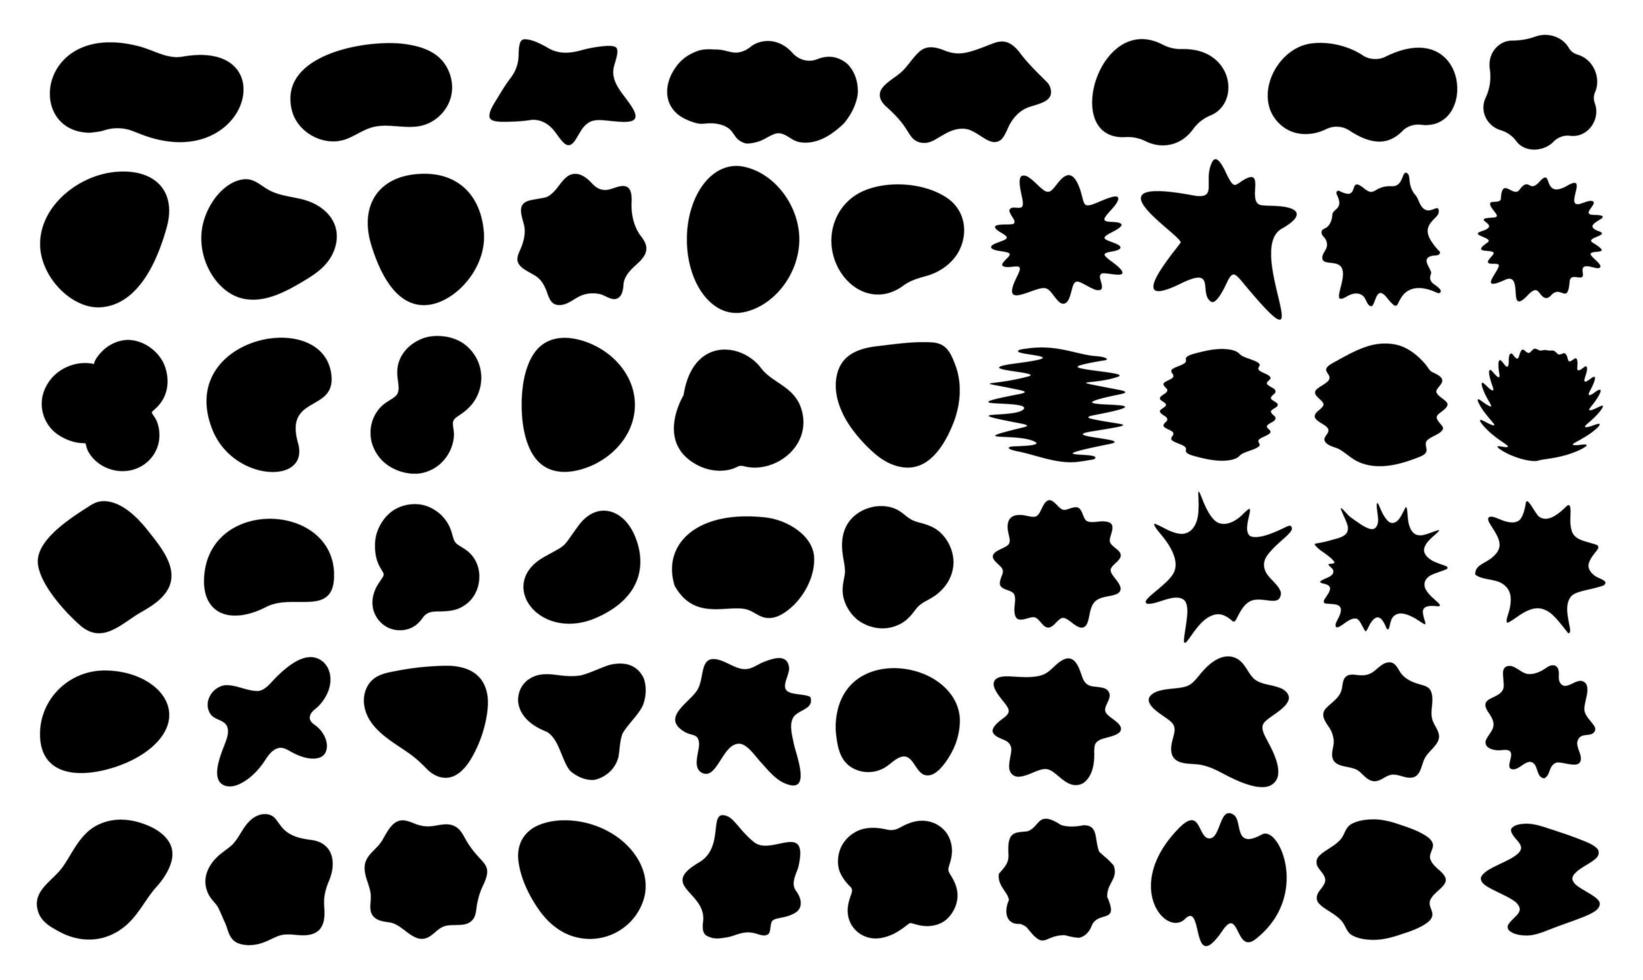 bloobs set di forme nere, macchie astratte casuali, silhouette a bolle nere, raccolta di forme liquide irregolari, fluido ondulato di inchiostro, punto artistico per lo sfondo, fumetto comico, illustrazione vettoriale